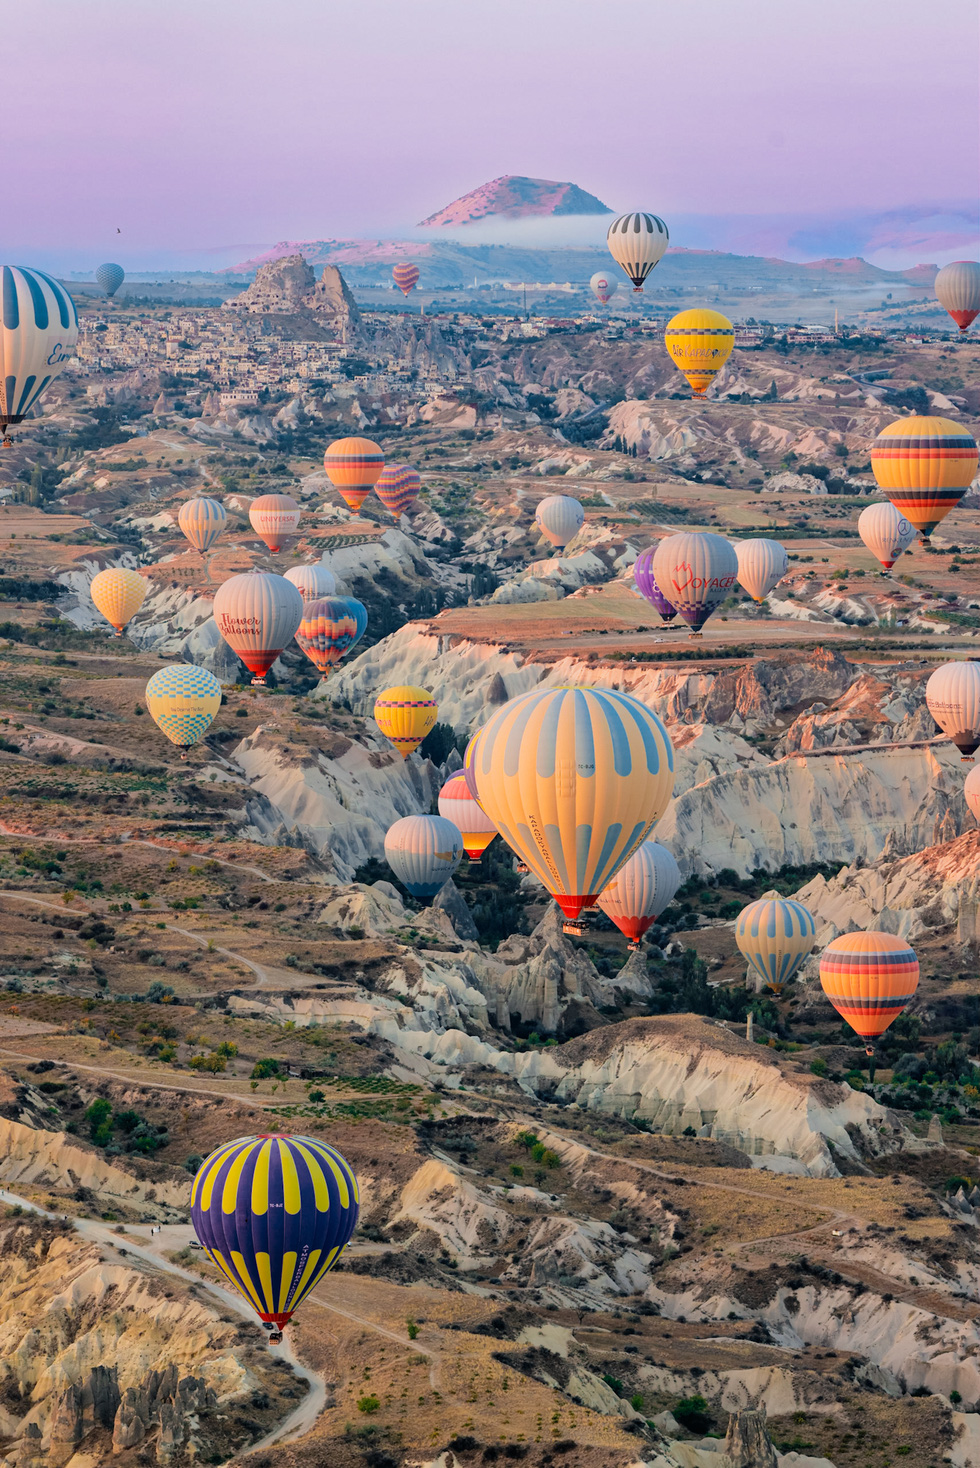 Bay khinh khí cầu trên những kỳ quan ở Cappadocia - Ảnh 17.